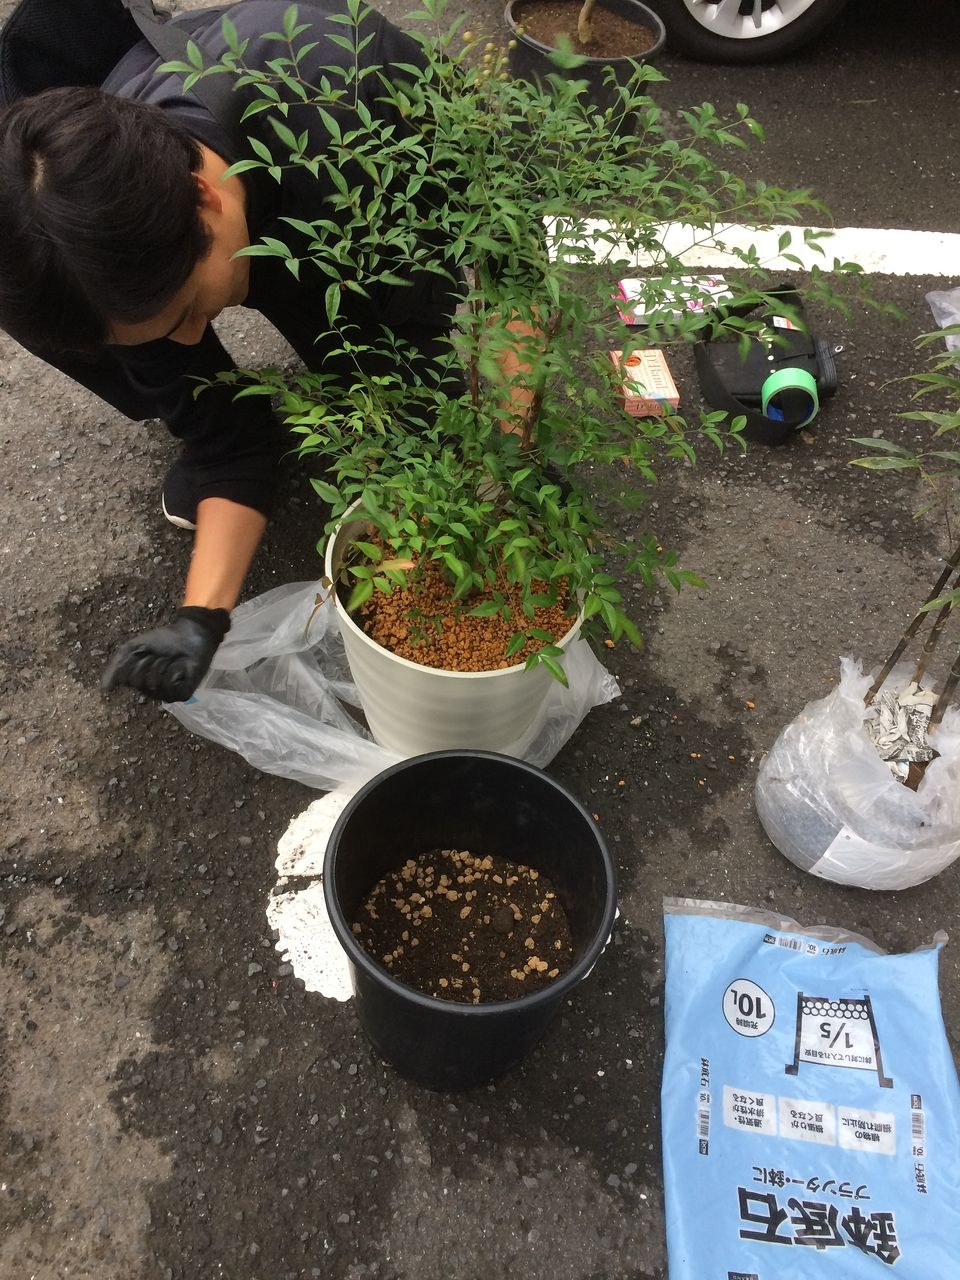 お店に行く前に植栽達を植え替えます。ホームセンターで買ってきた培養土などを使って、植栽達をナーセリーポットに植えていきます。